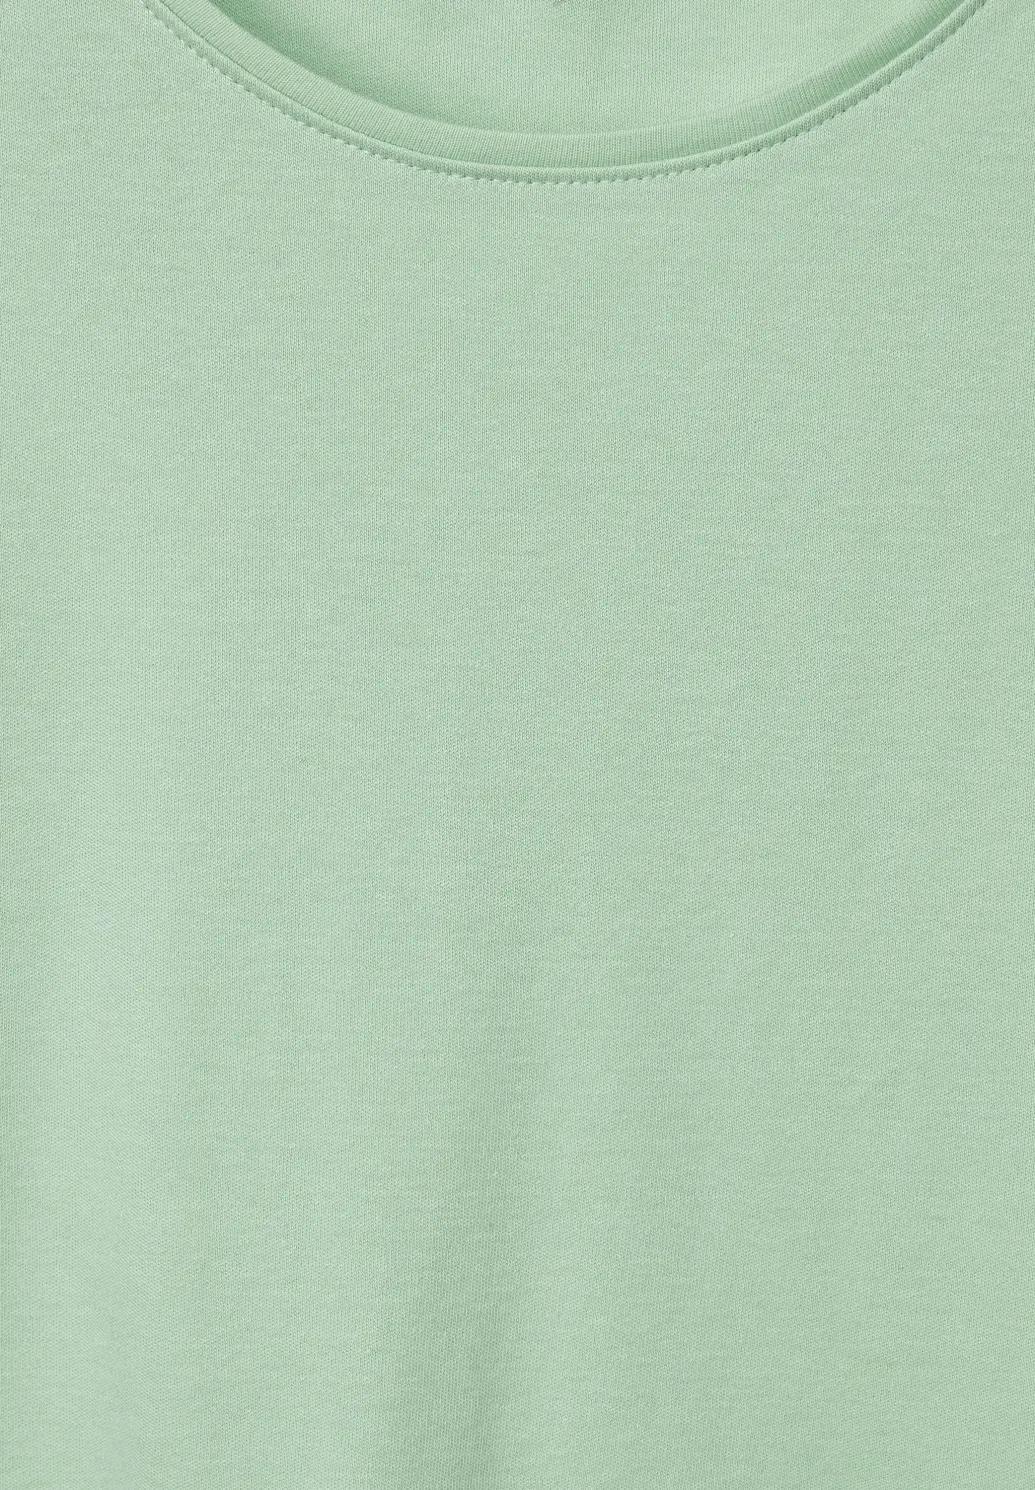 CECIL jednofarebné tričko, štýl LENA, zel